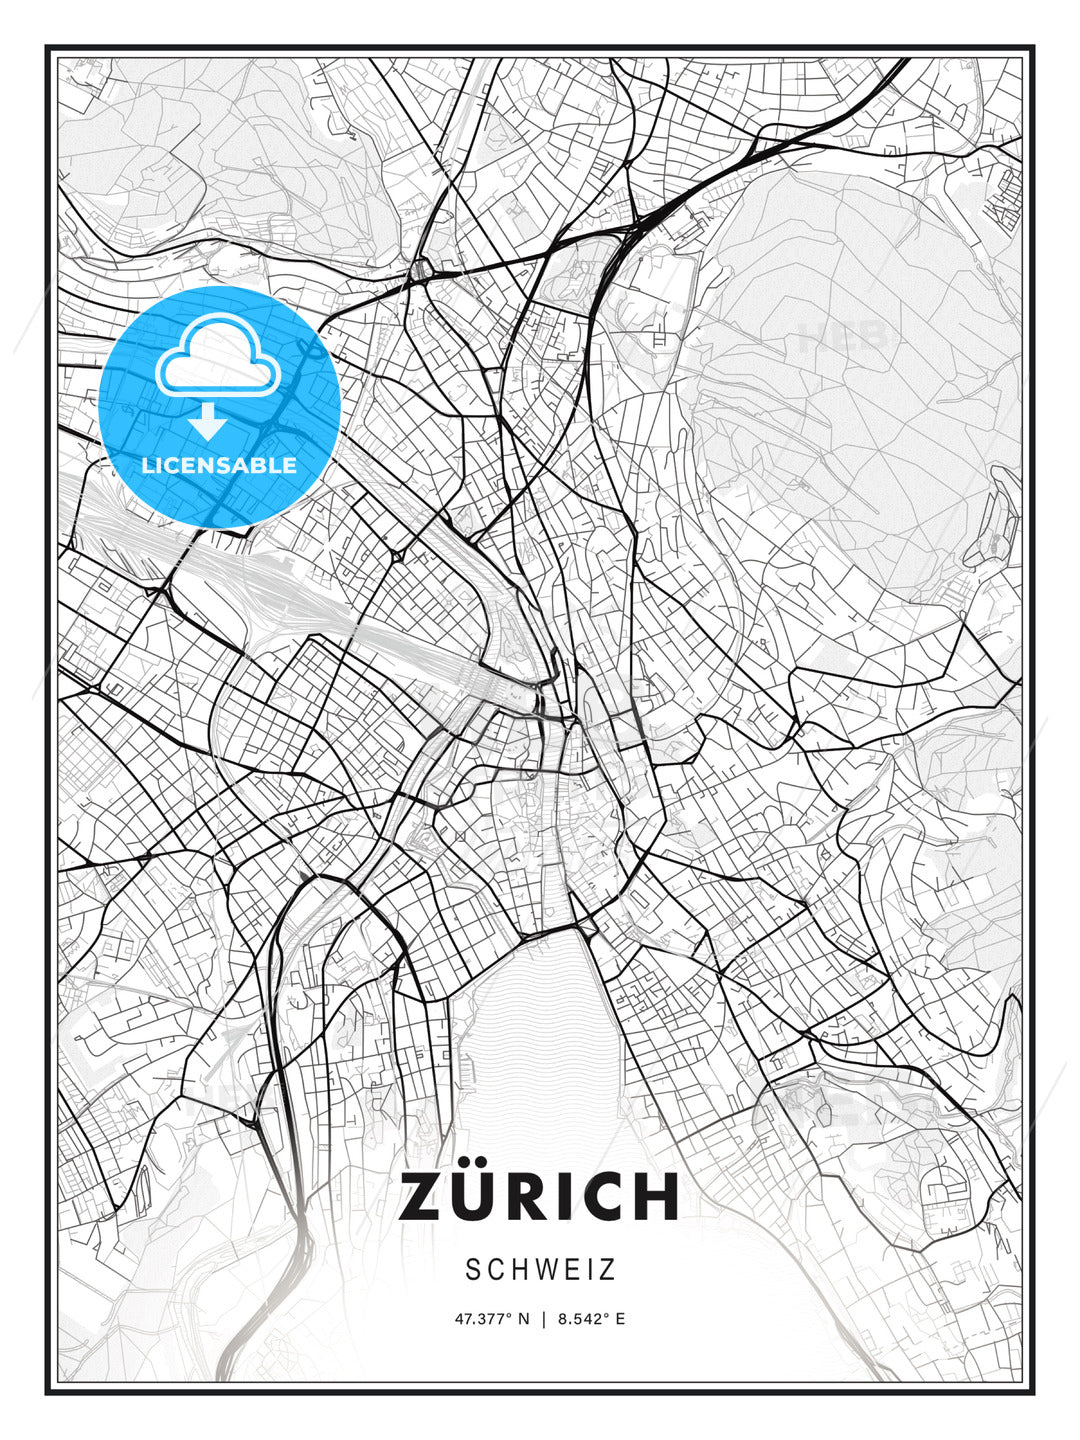 Zürich, Switzerland, Modern Print Template in Various Formats - HEBSTREITS Sketches